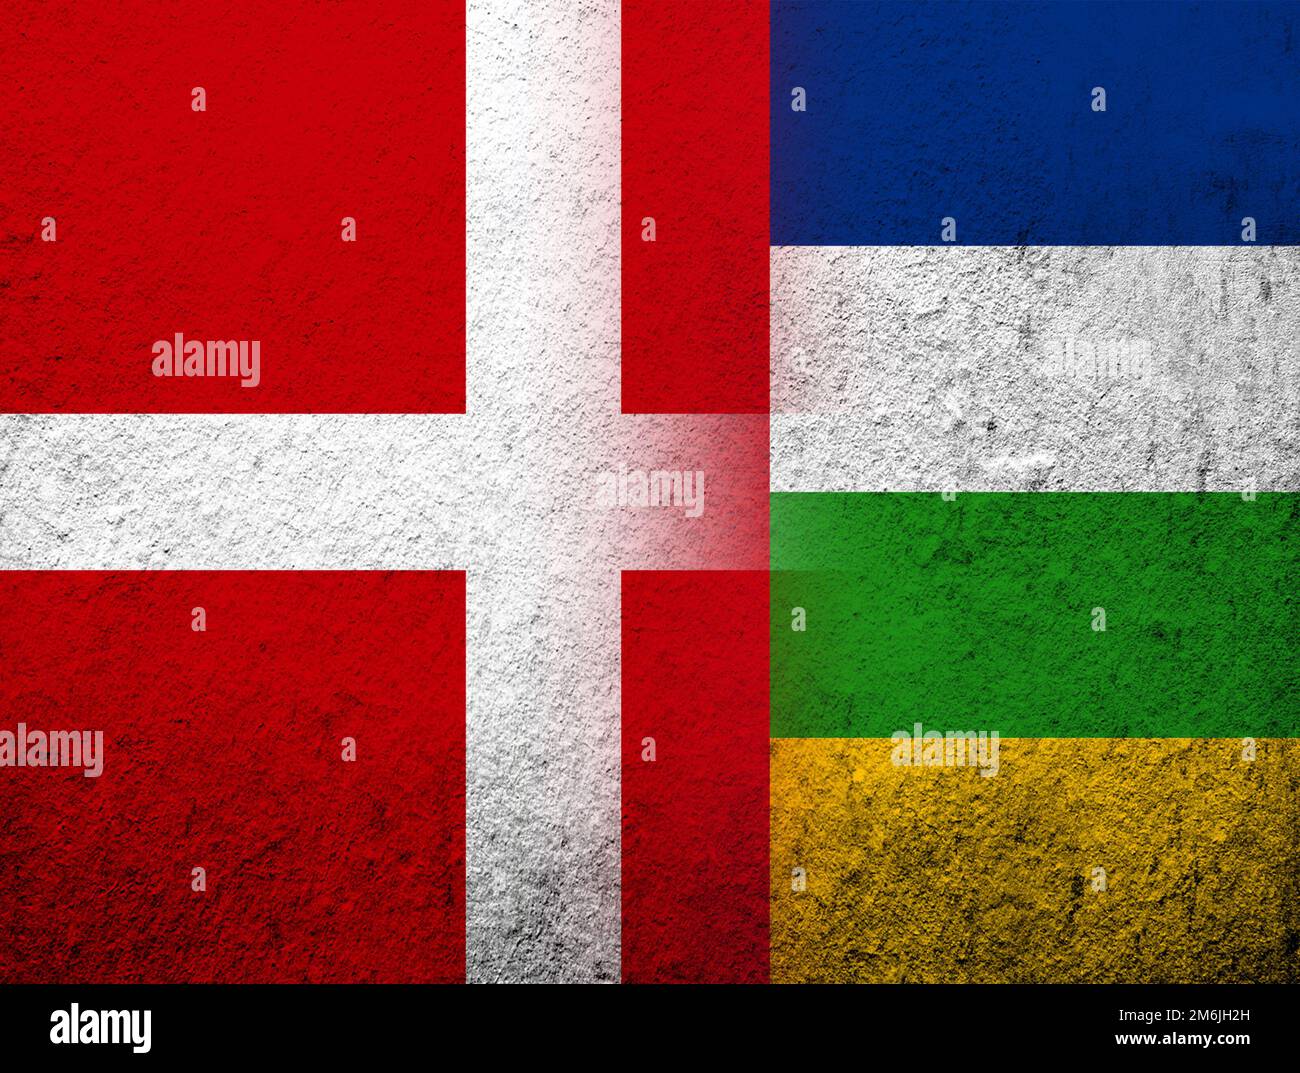 Le Royaume de Danemark drapeau national avec drapeau national de la République centrafricaine. Grunge l'arrière-plan Banque D'Images